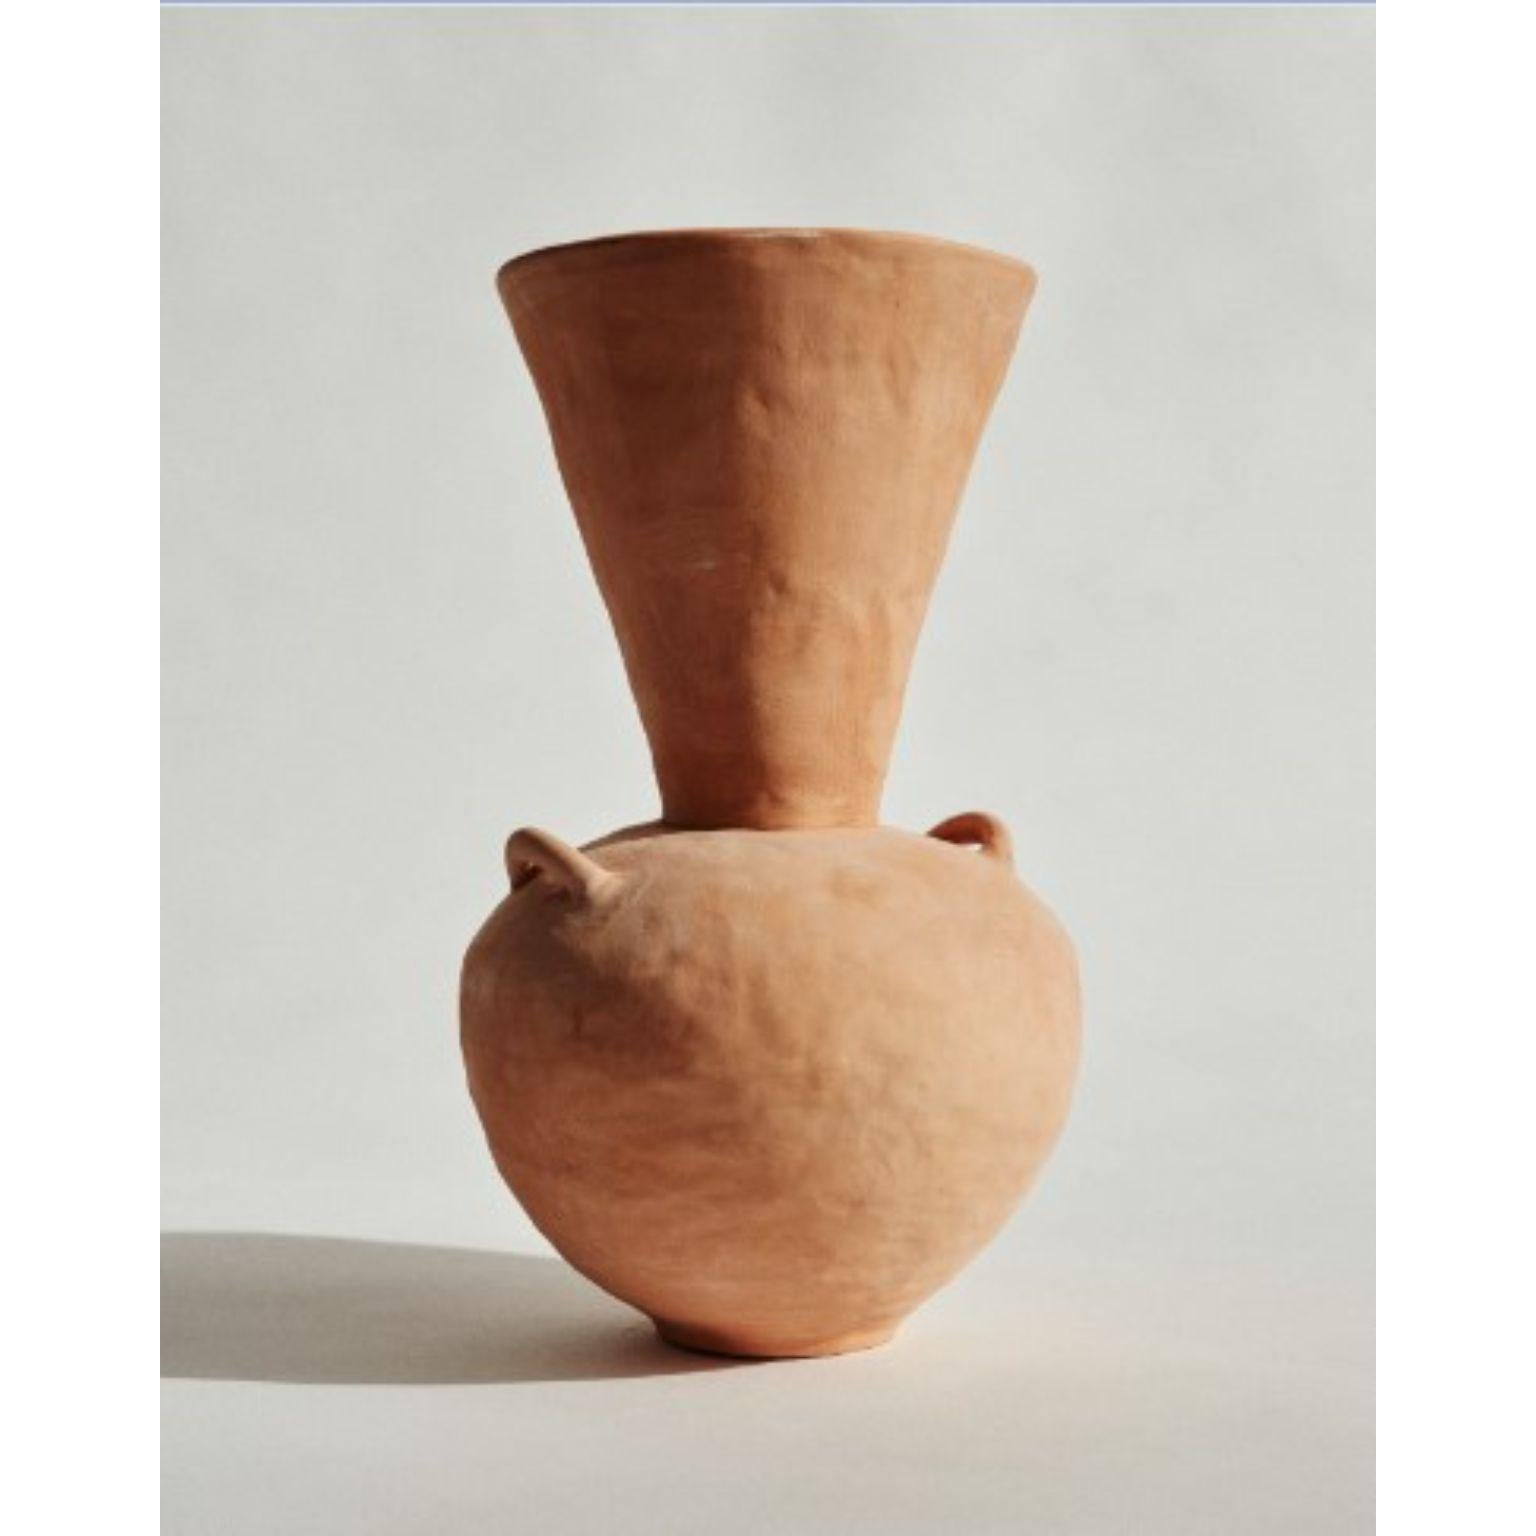 Terrakotta-Vase von Marta Bonilla
Abmessungen: T20 x H33
MATERIALIEN: Terrakotta, Ton.

Terracota-Vase: Bei niedriger Temperatur von Hand modelliertes Stück. Innen emailliert. Draußen behält er die natürliche Farbe des Lehms, die